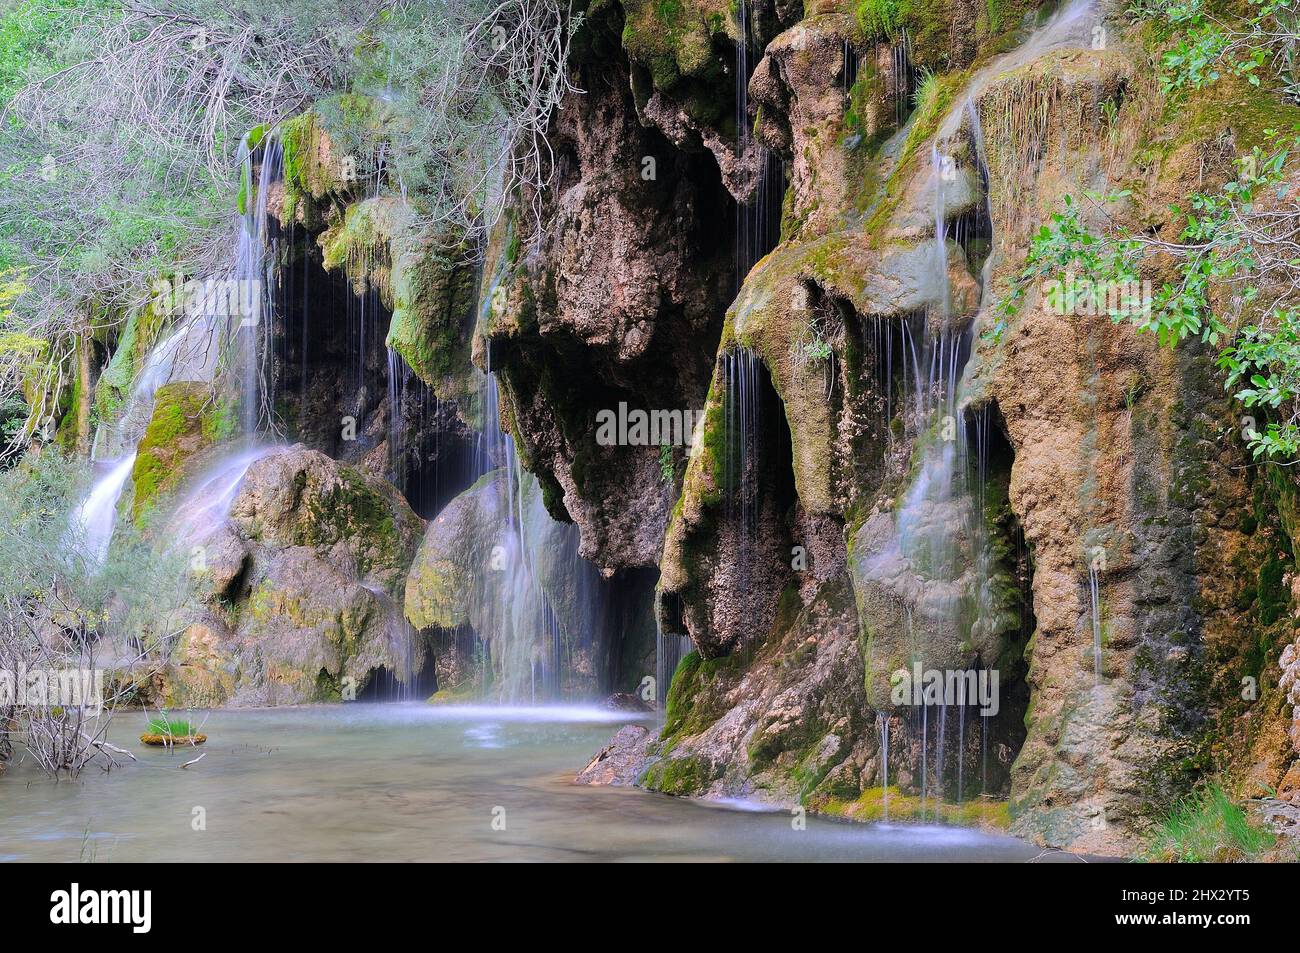 Nacimiento del rio cuervo fotografías e imágenes de alta resolución - Alamy